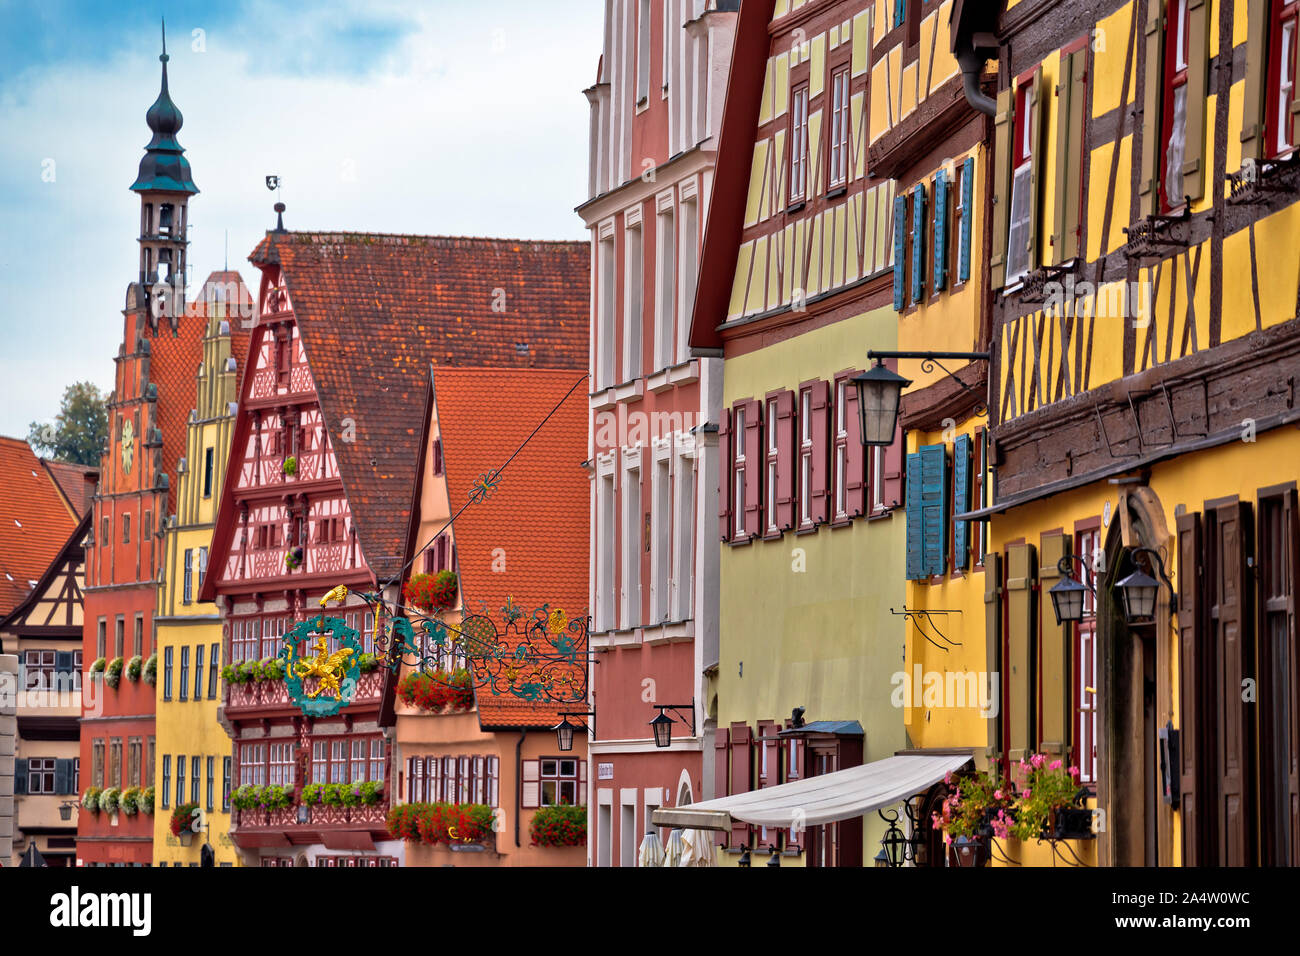 Allemand colorés façades de ville historique de Dinkelsbuhl, route romantique de la Bavière, région d'Allemagne Banque D'Images